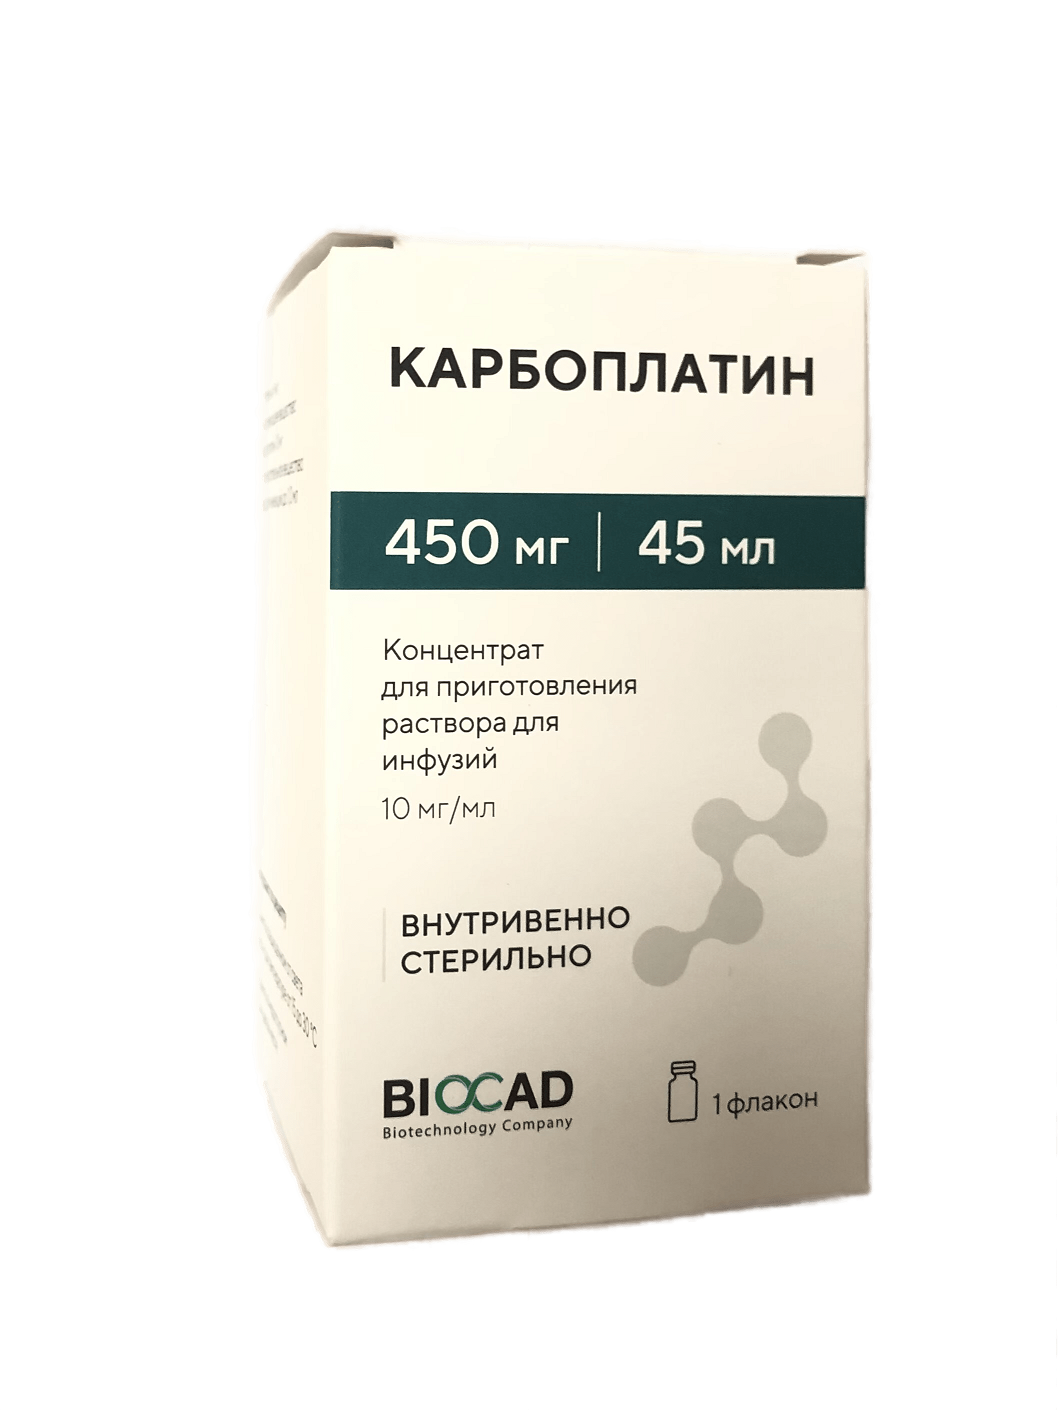 Карбоплатин концентрат для приготовления раствора для инфузий 450 мг (10 мг/мл) флакон 15 мл